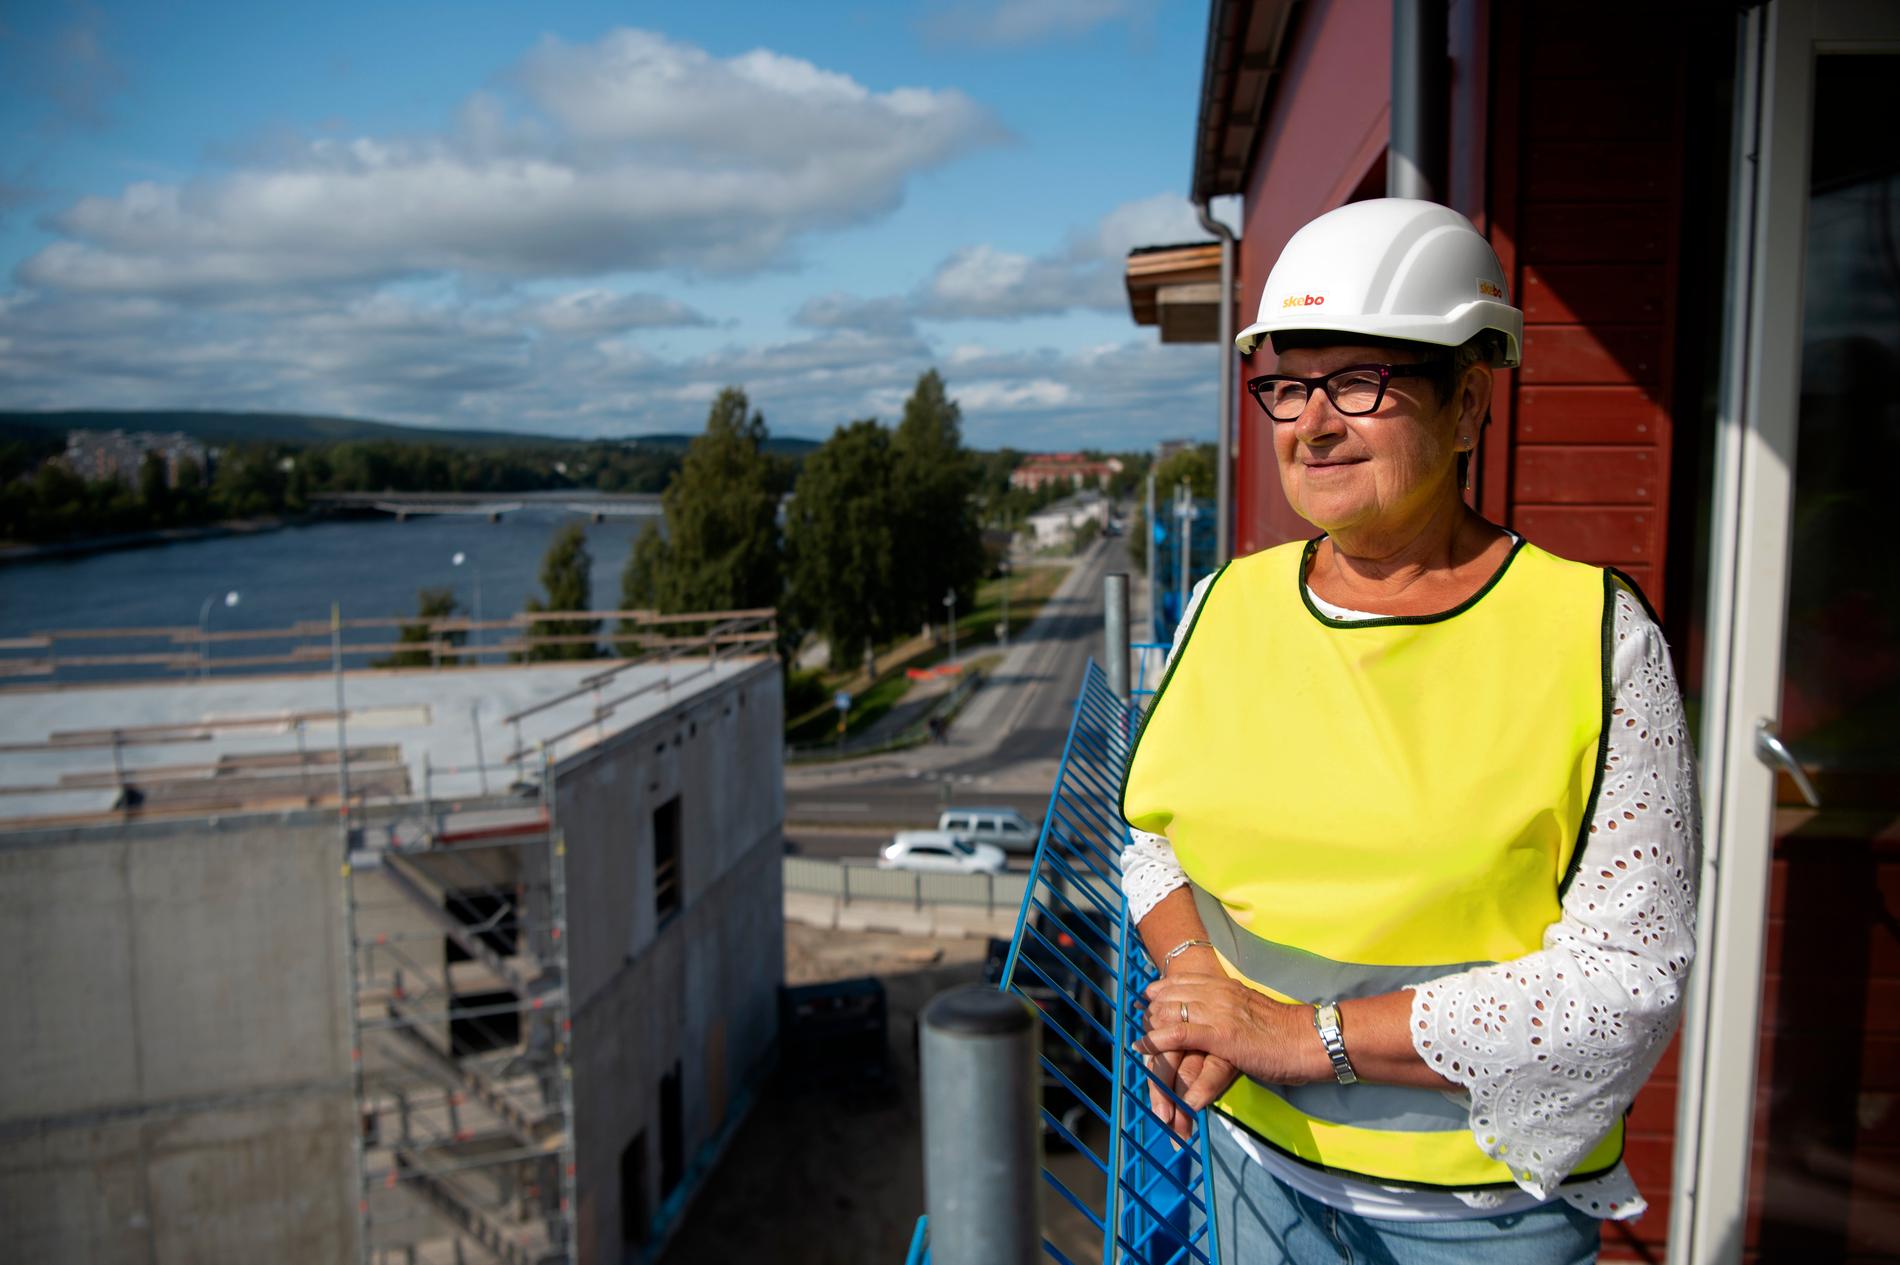 Förutom Skebo är flera andra aktörer numera aktiva bostadsbyggare i Skellefteå.